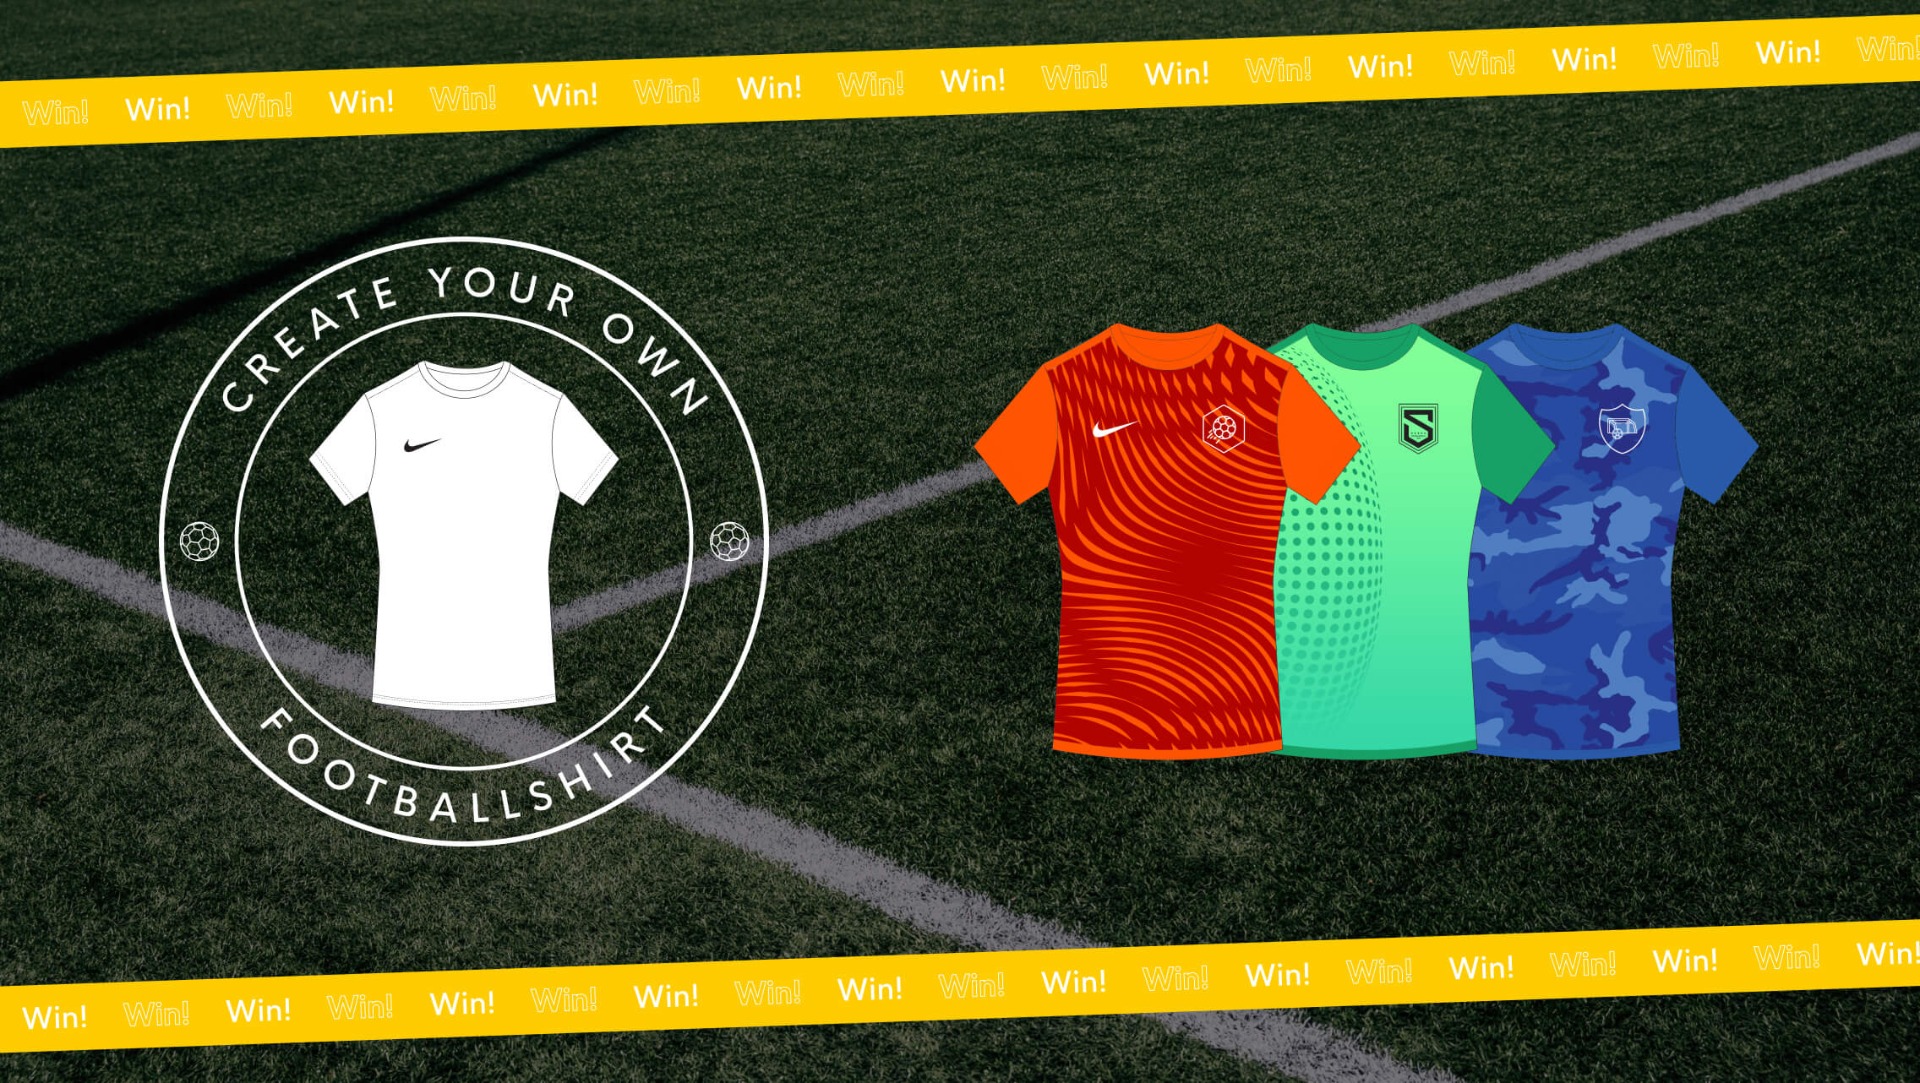 Ontwerp jouw voetbalshirt en win dat shirt voor je voetbalteam!